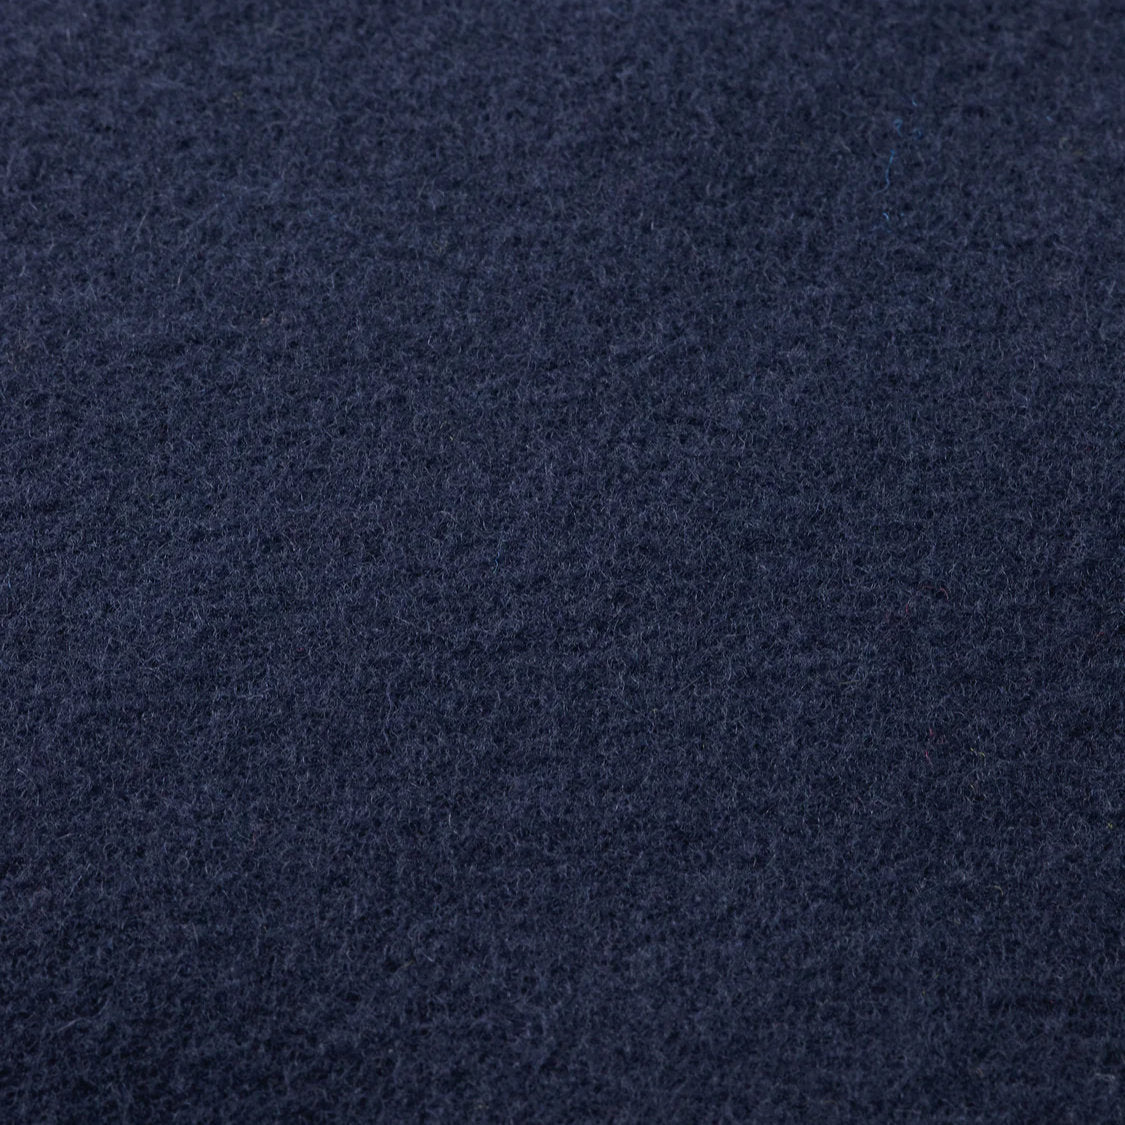 'Scotch & Soda Unisex 100% Virgin Wool Scarf' in 'Night Blue' colour